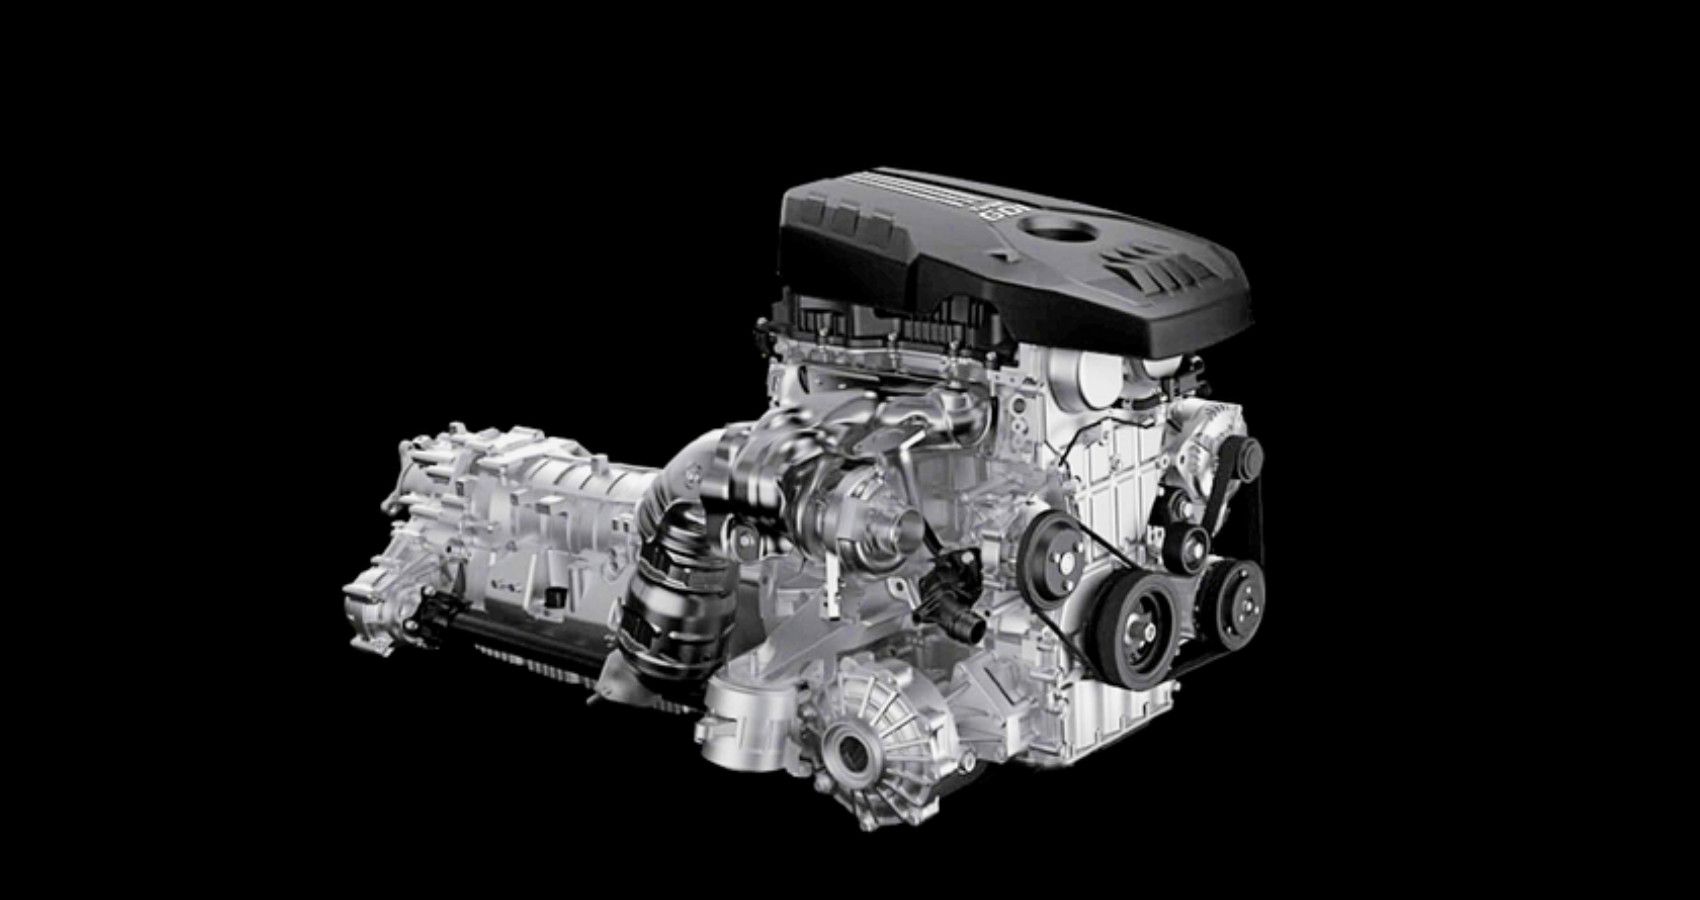 Genesis G70 Shooting Brake Engine